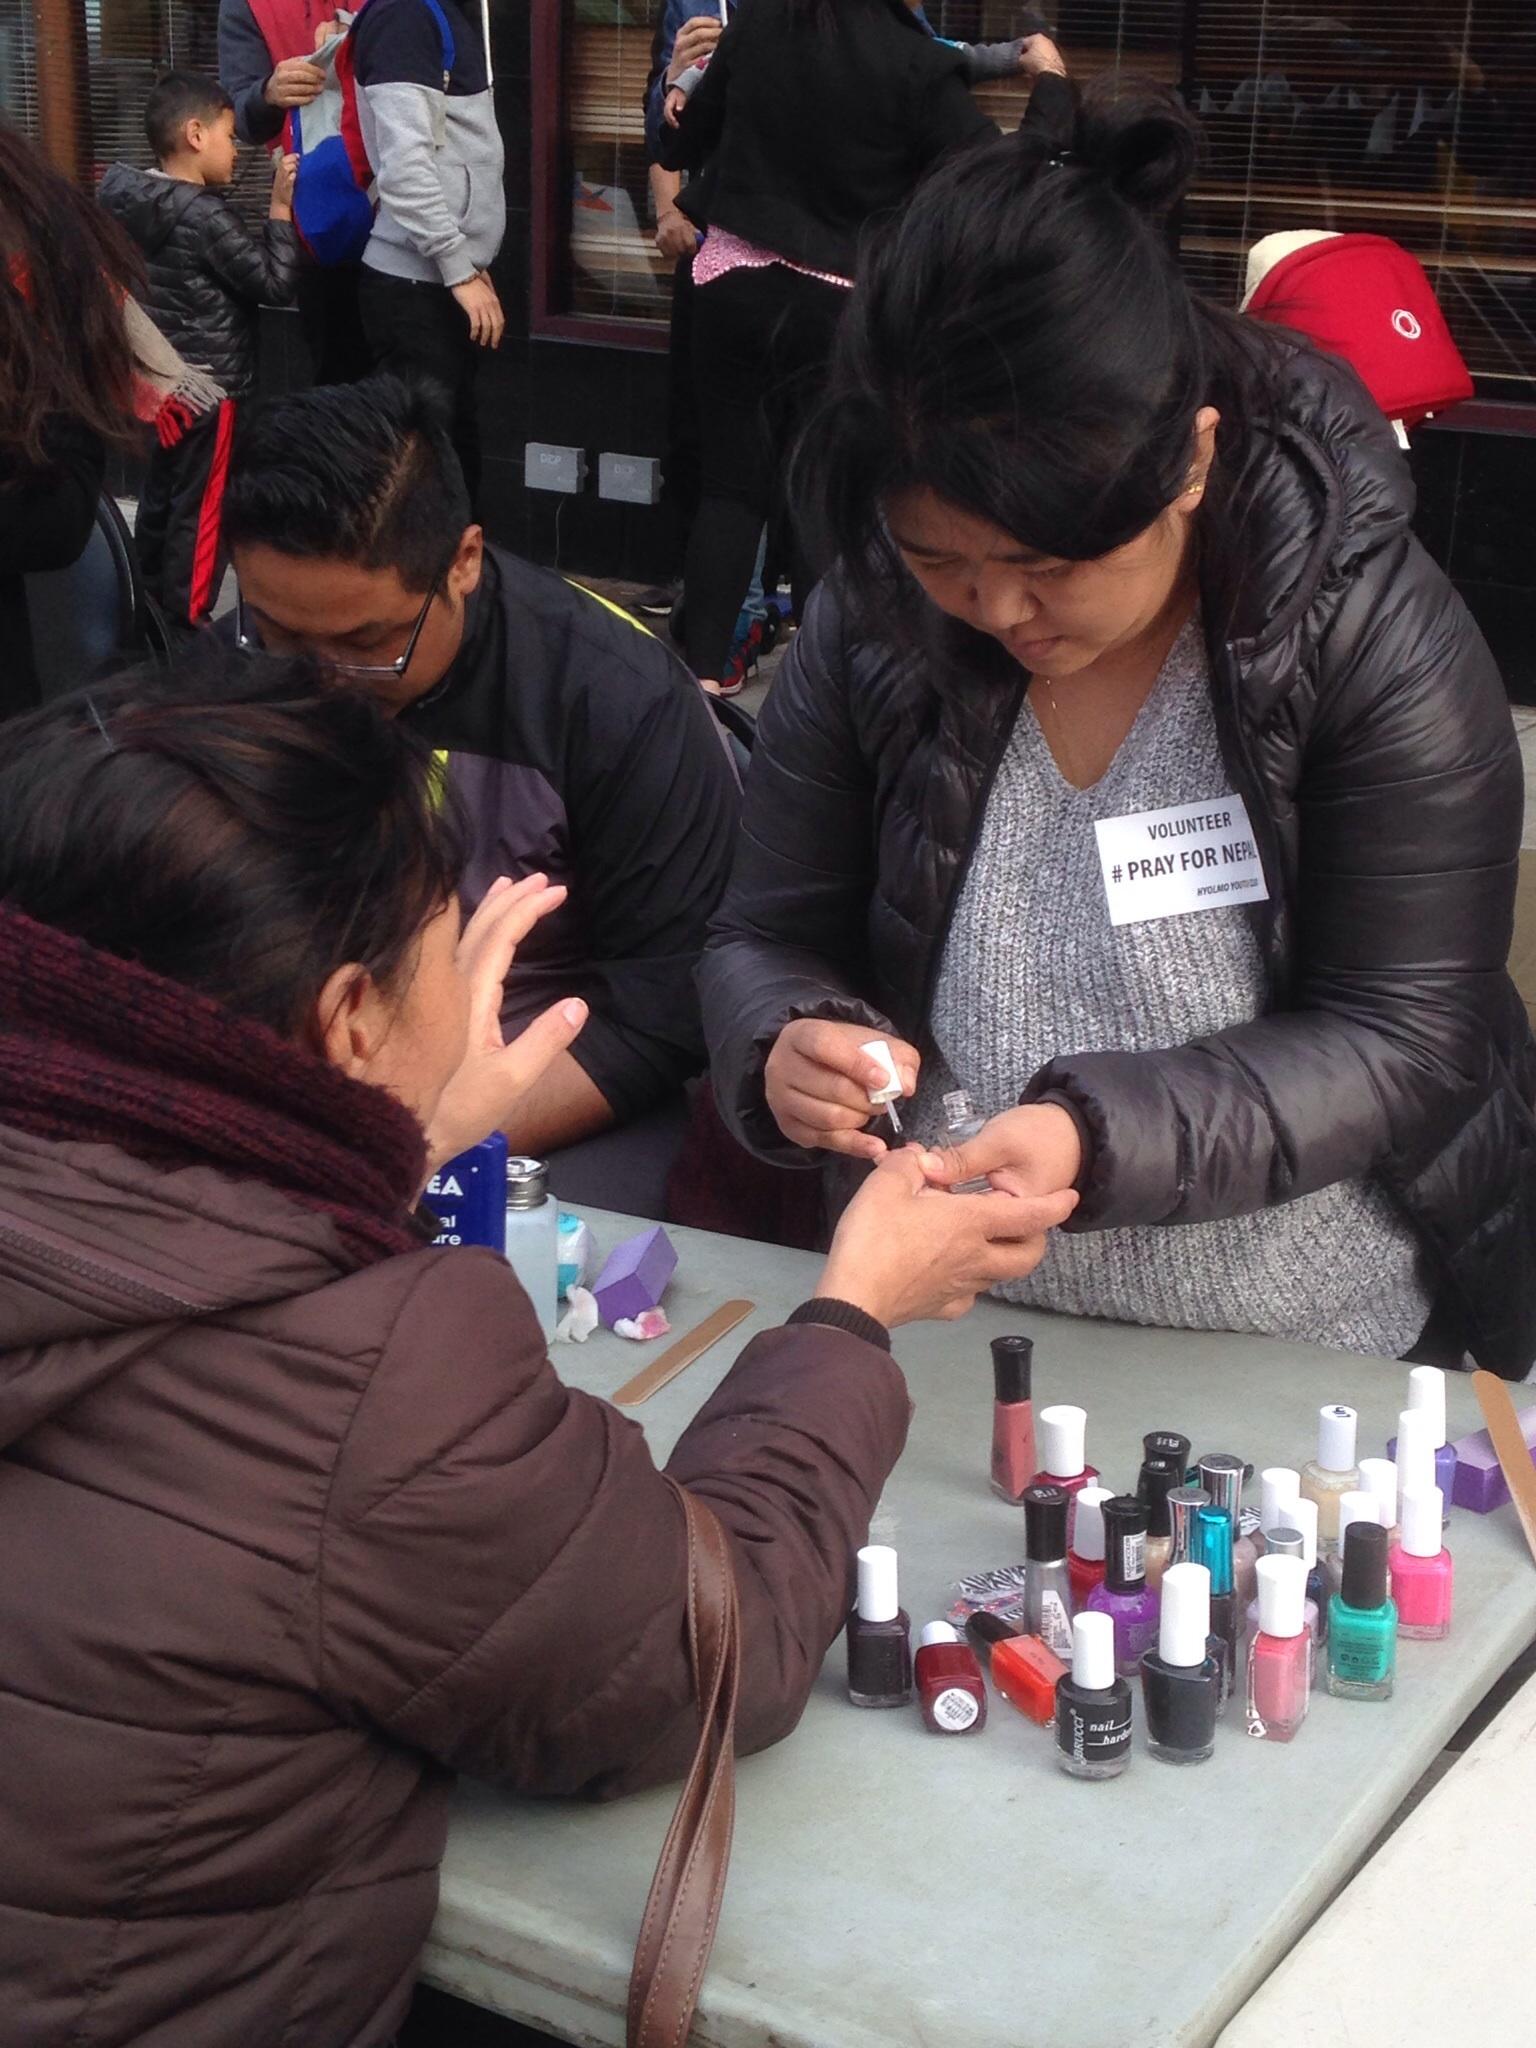 Women paint nails to raise money.